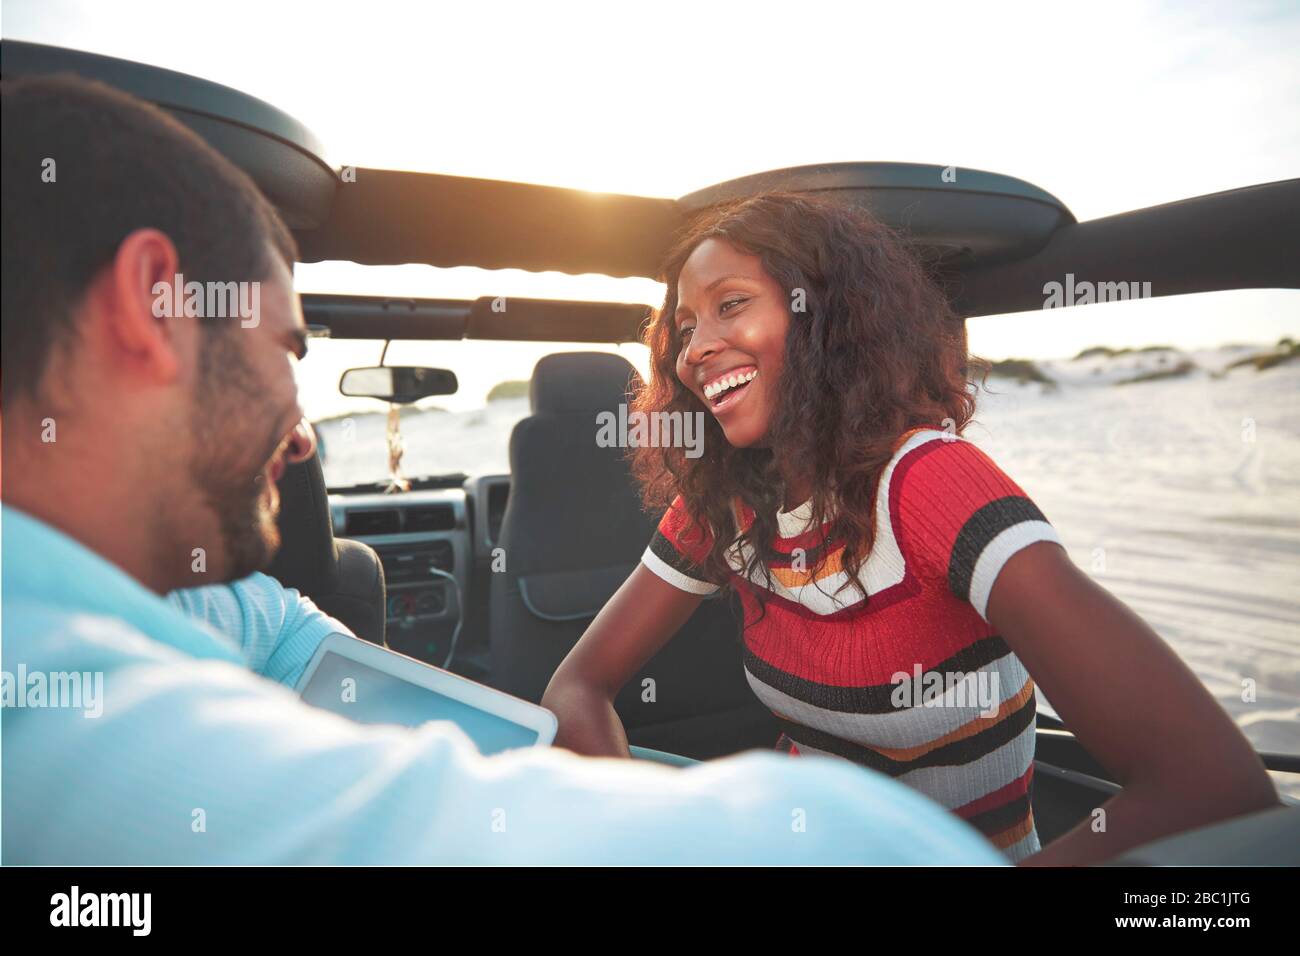 Jeune couple souriant en train de monter sur place à l'arrière de la jeep sur la plage, en profitant d'un voyage sur la route Banque D'Images